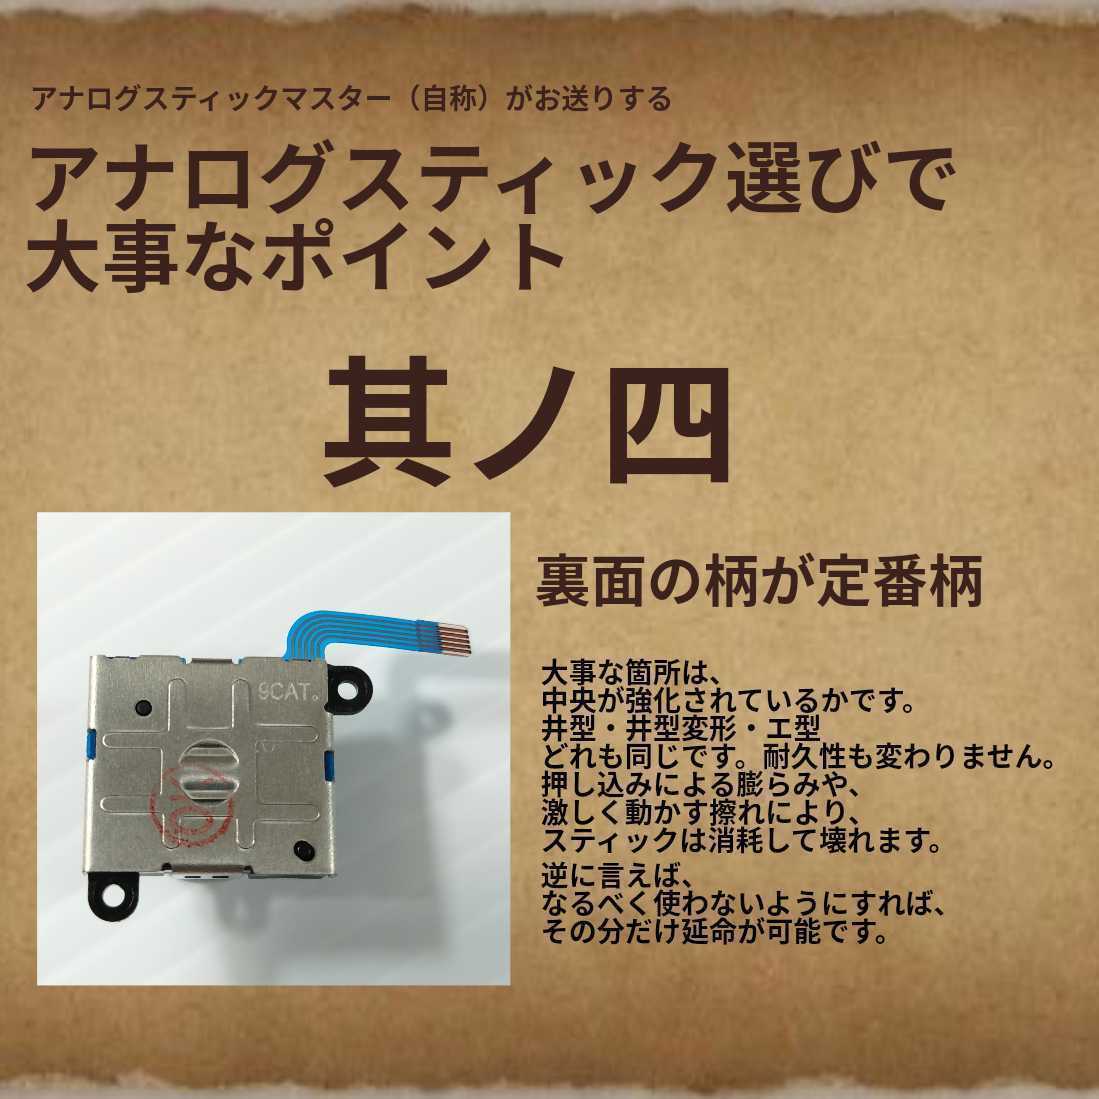 Nintendo Switch Joy-Con　アナログスティック・ジョイスティック　2個(赤1個・青1個)　ジョイコン・スイッチライトの補修パーツ